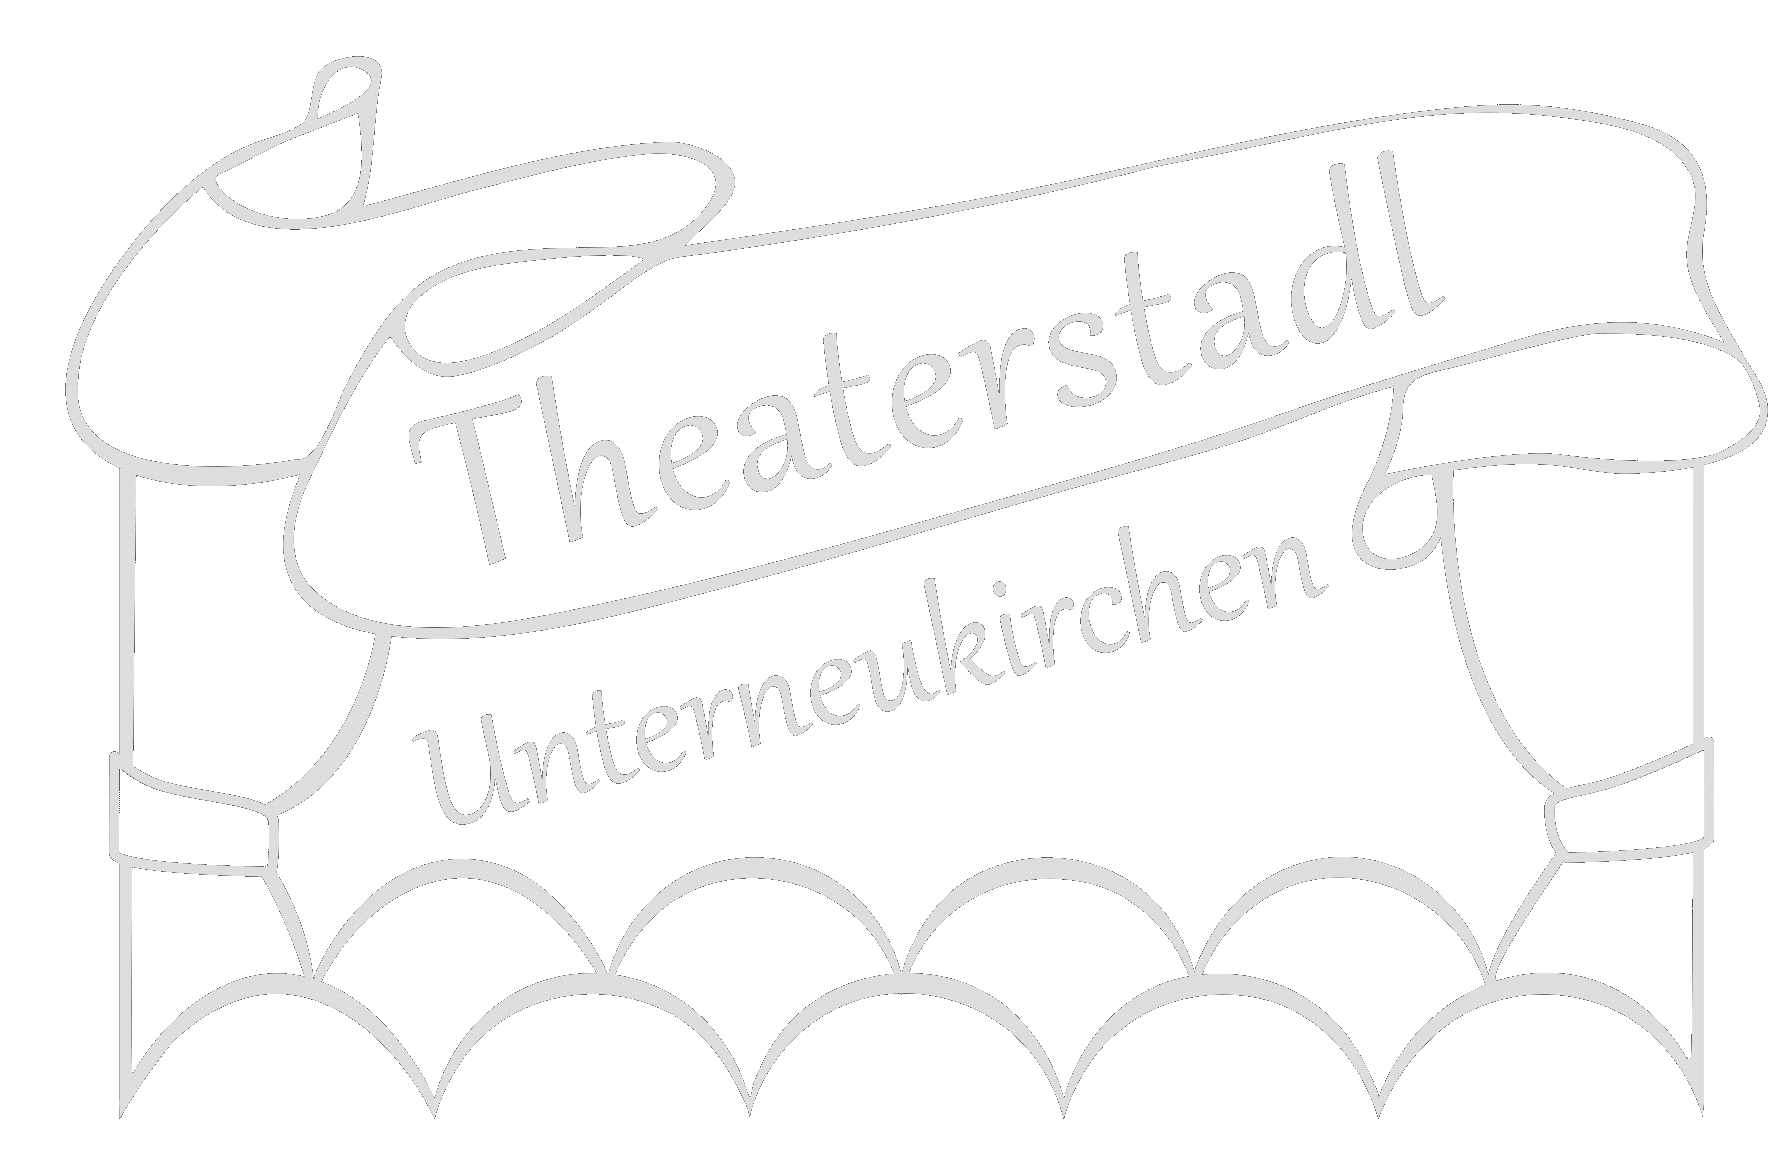 Theaterstadl Unterneukirchen